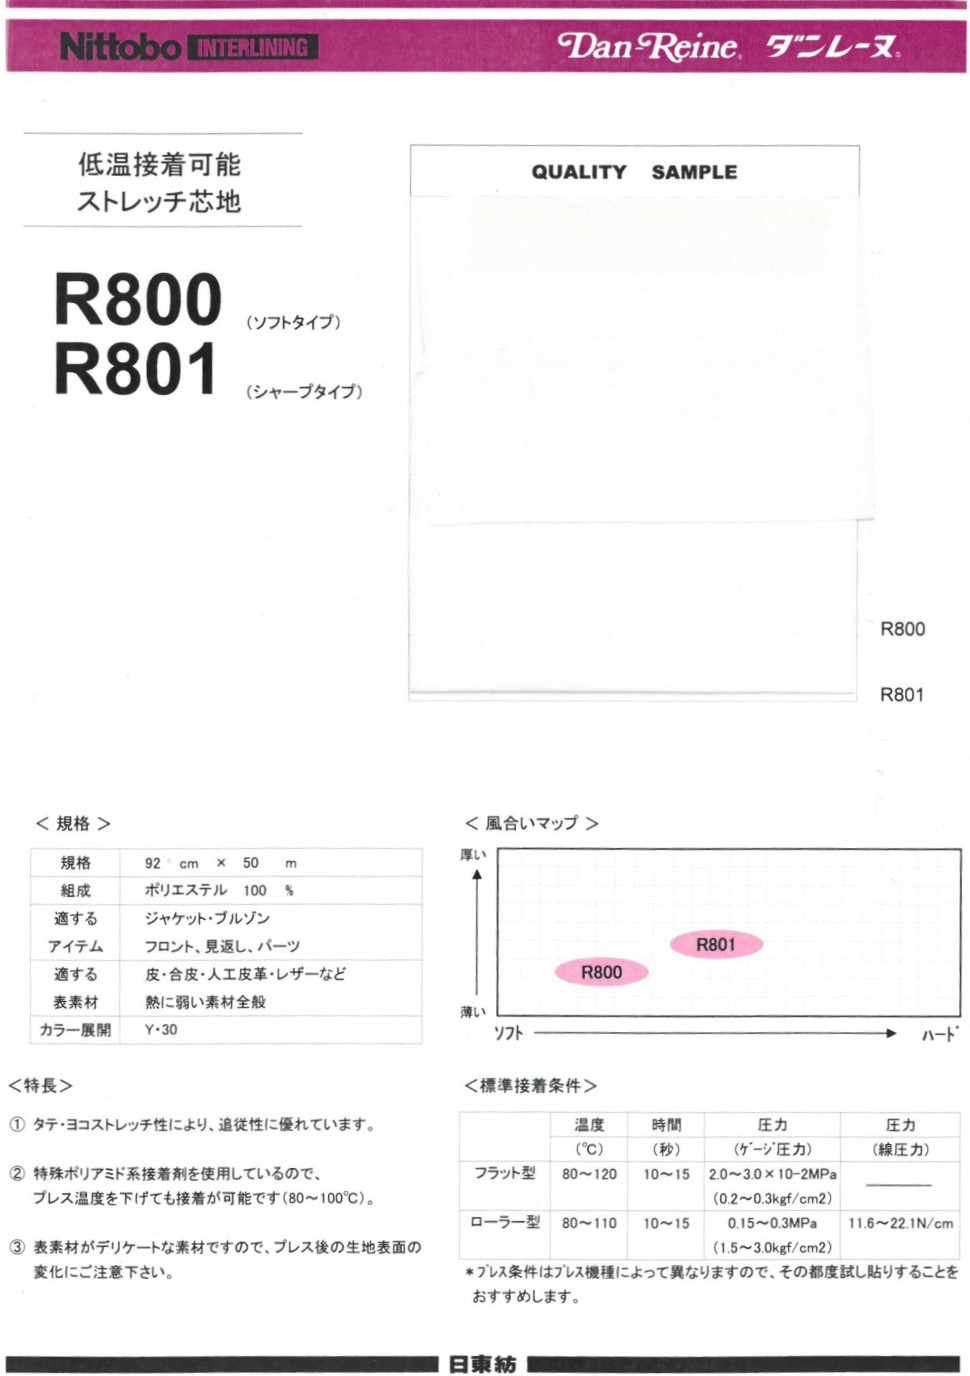 R801 Danlaine Low Temperature Adhesive Stretch Interlining Sharp Typ 30D[Einlage] Nittobo